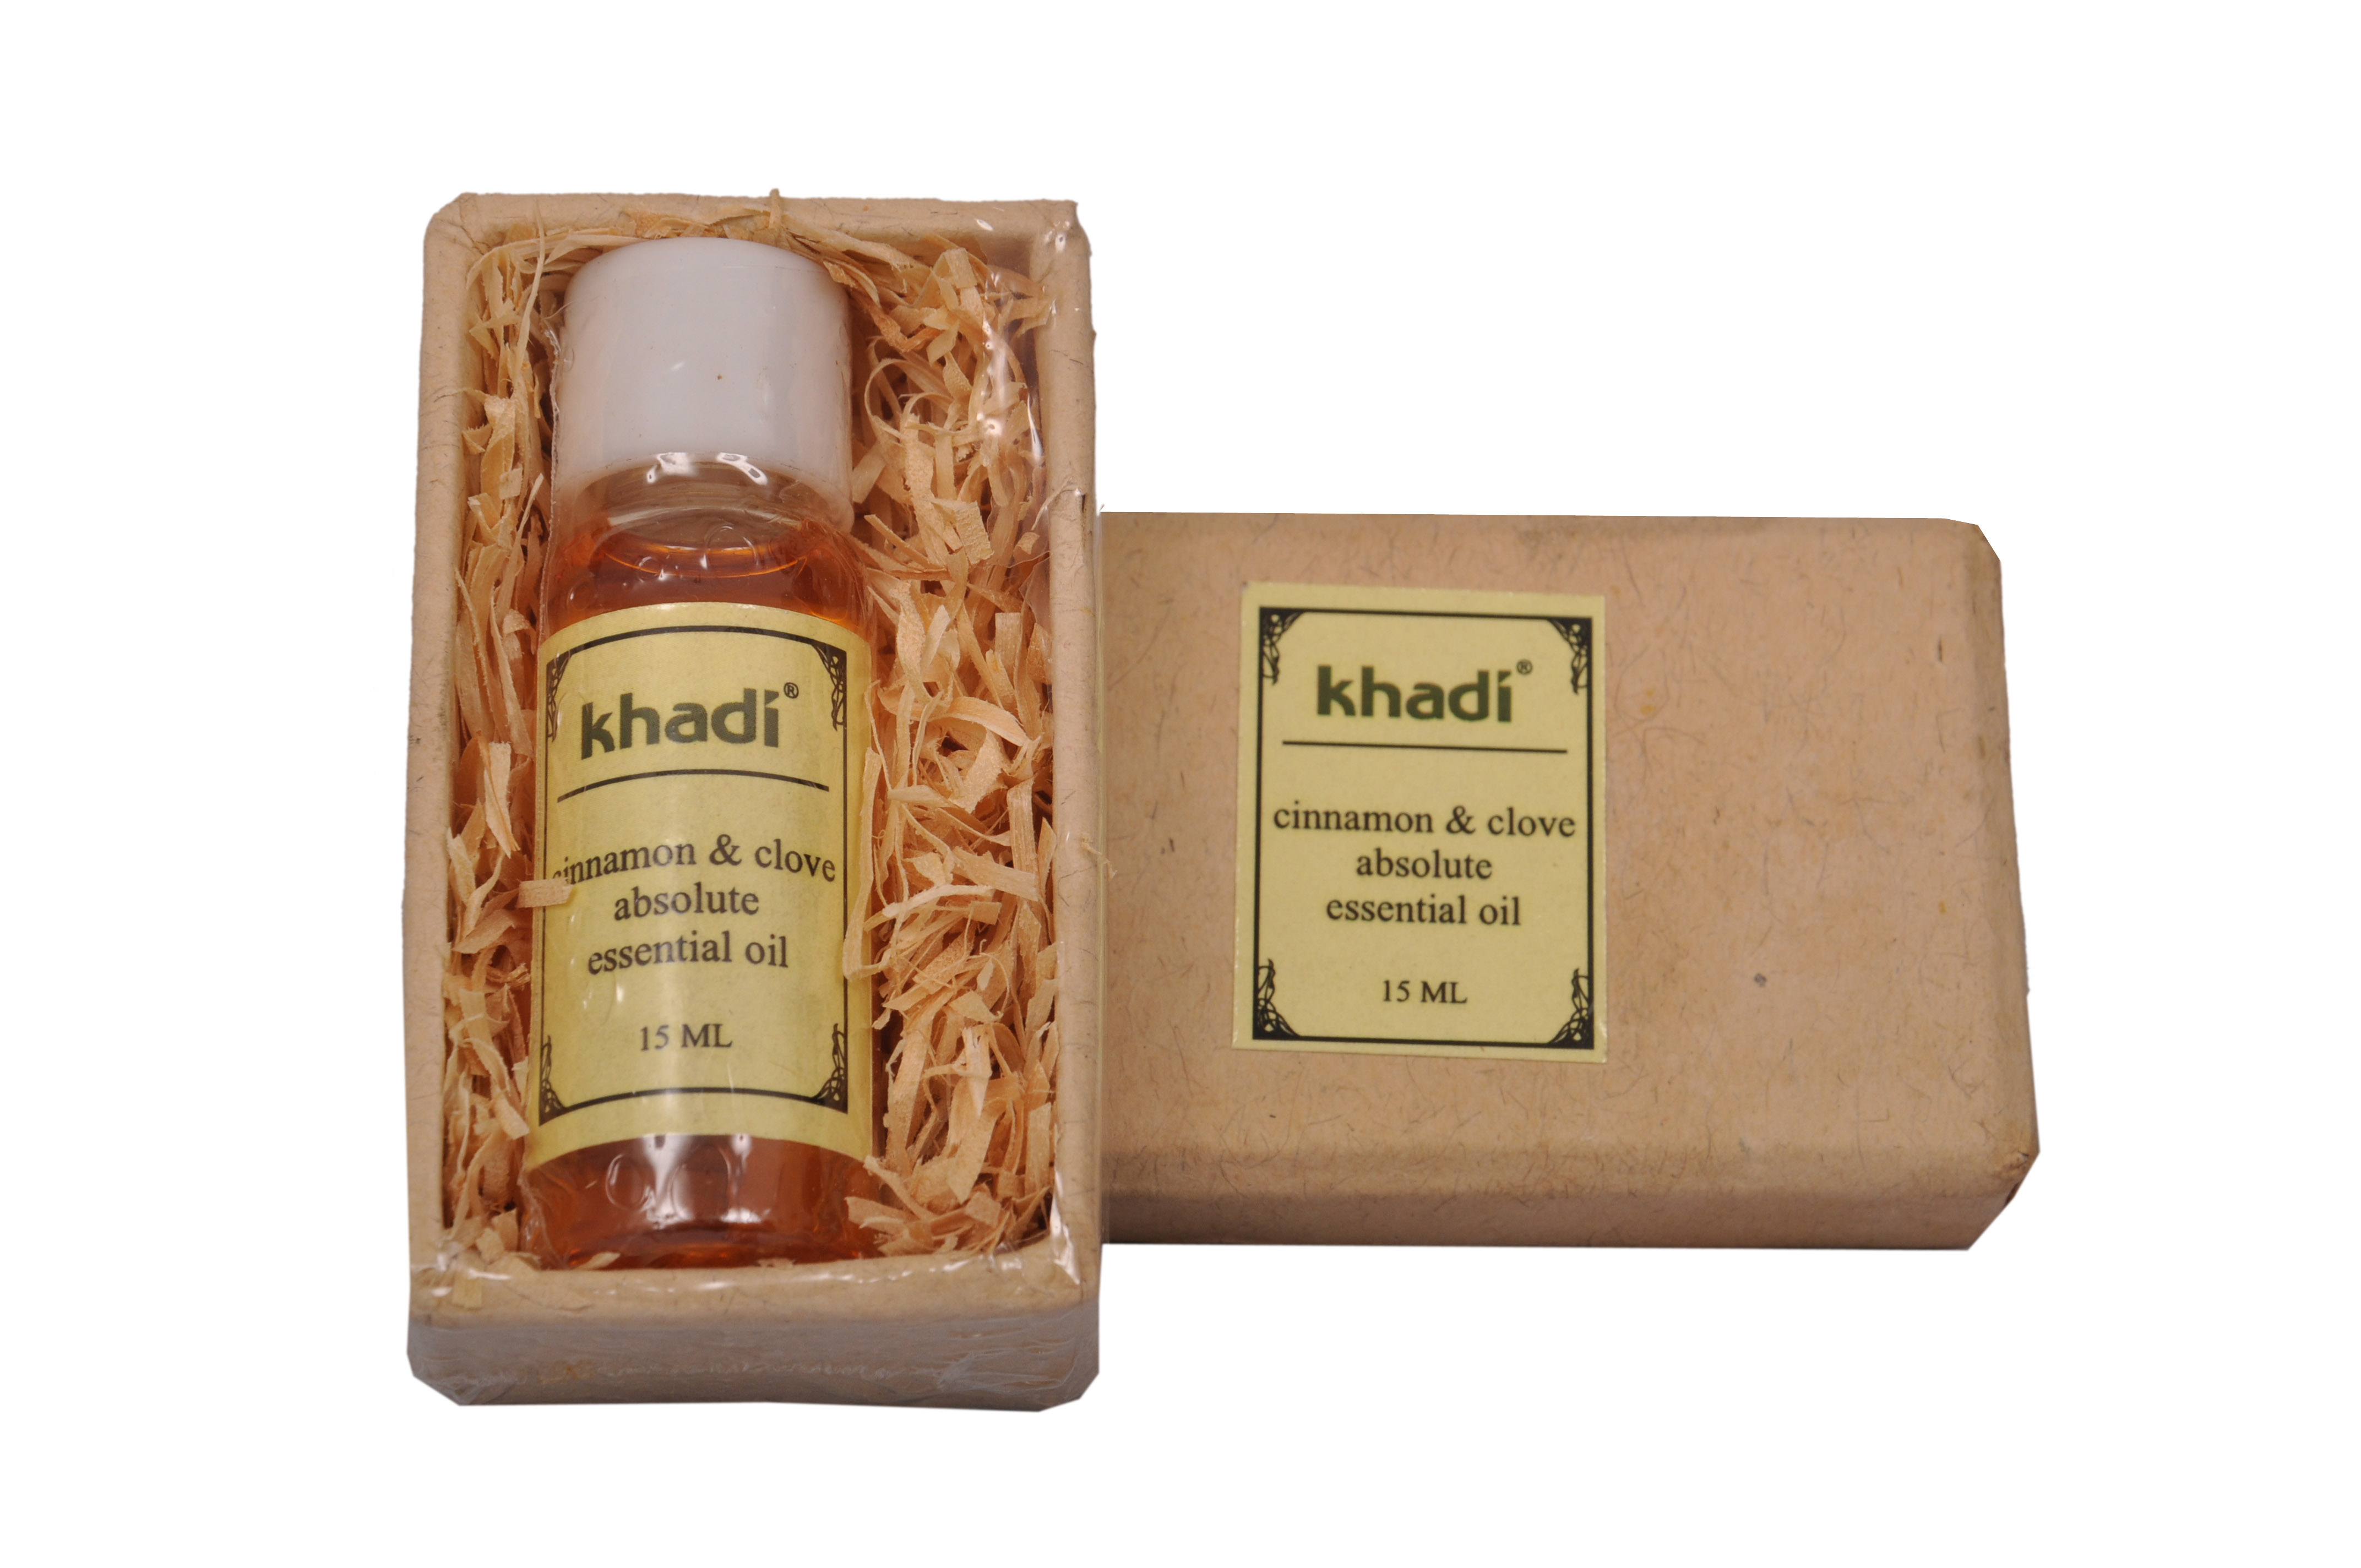 Buy Khadi Cinnamon & Clove Essential Oil at Best Price Online